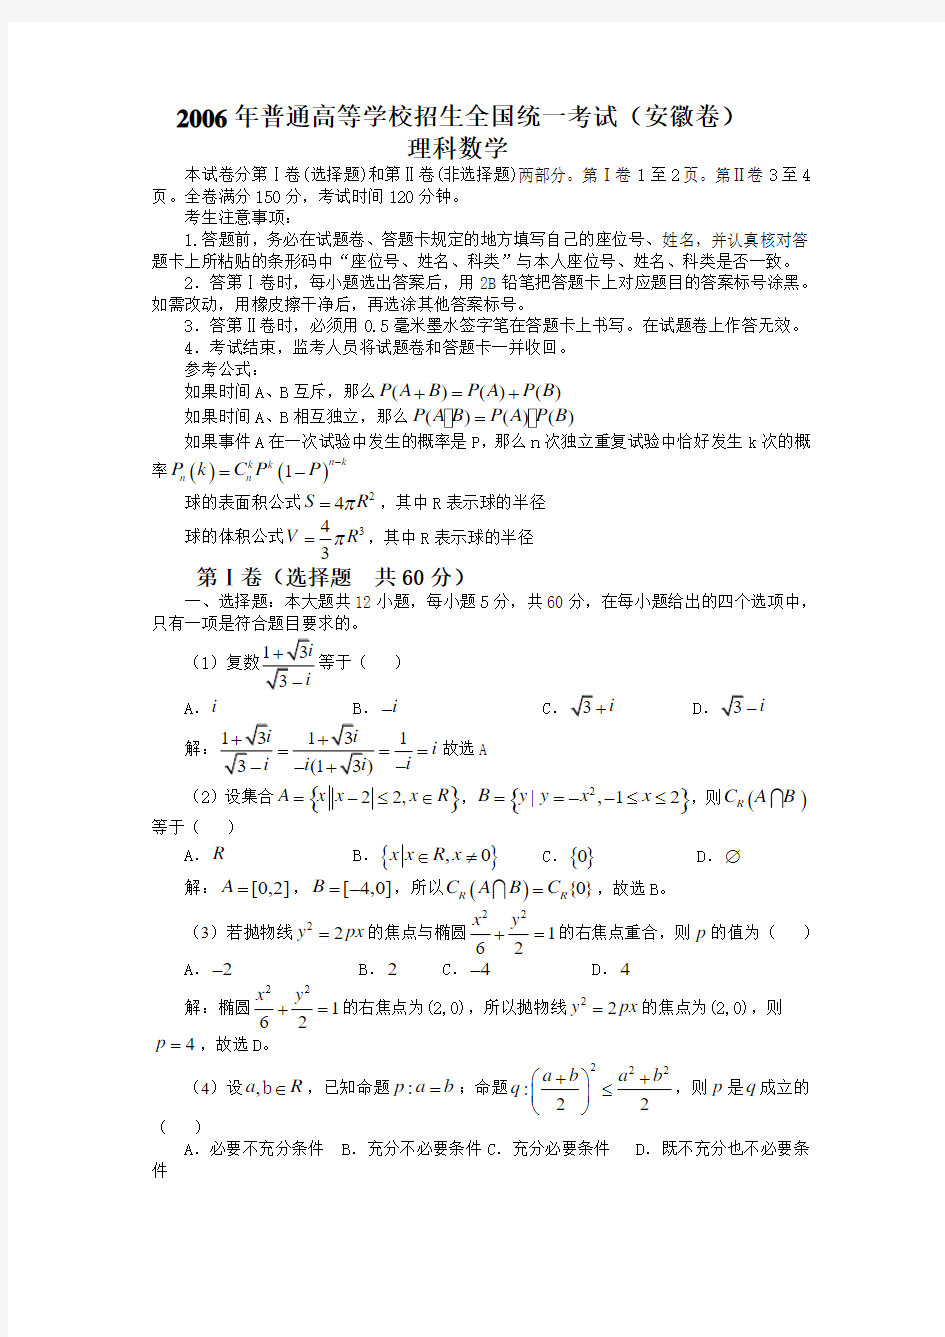 2019年高考理科数学试题及答案(安徽卷)